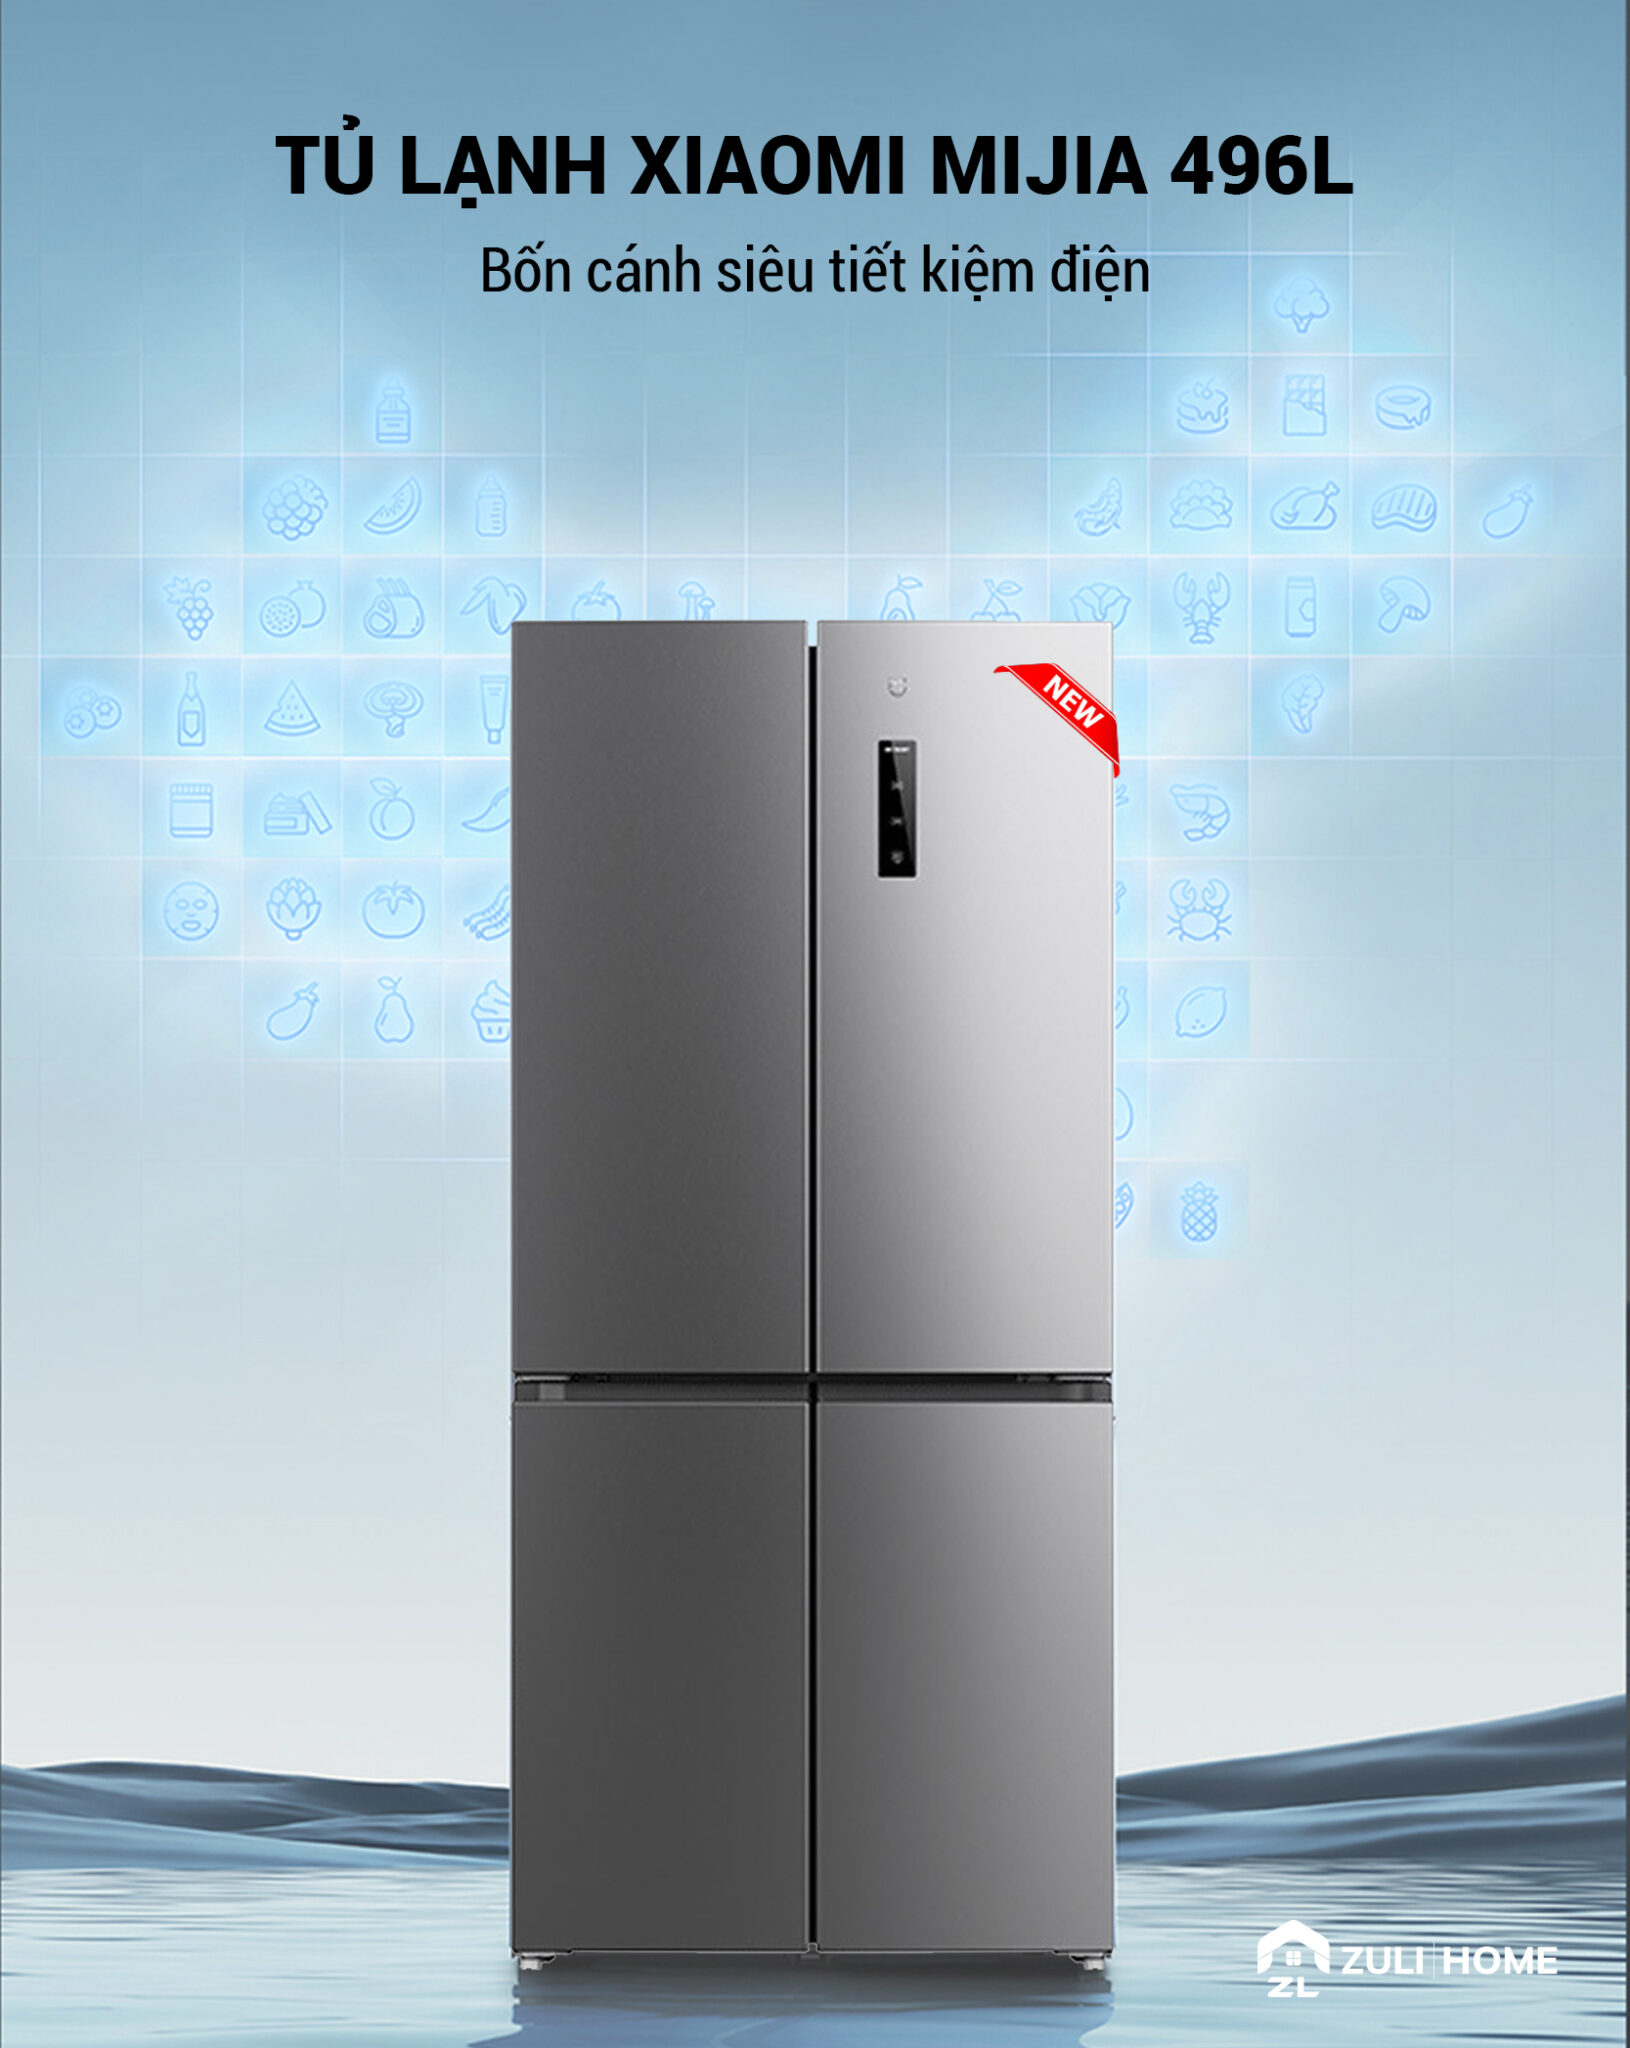 [Chỉ Giao Bên Ngoài Quá Cồng Kềnh ] Tủ Lạnh Xiaomi Mijia 496L 4 Cánh – Siêu TIết Kiệm Điện Có Ngăn Đông Mềm, Khử Khuẩn 99,99%, Tiết Kiệm Điện Kết Nối App Xiaomi - Hàng Nhập Khẩu